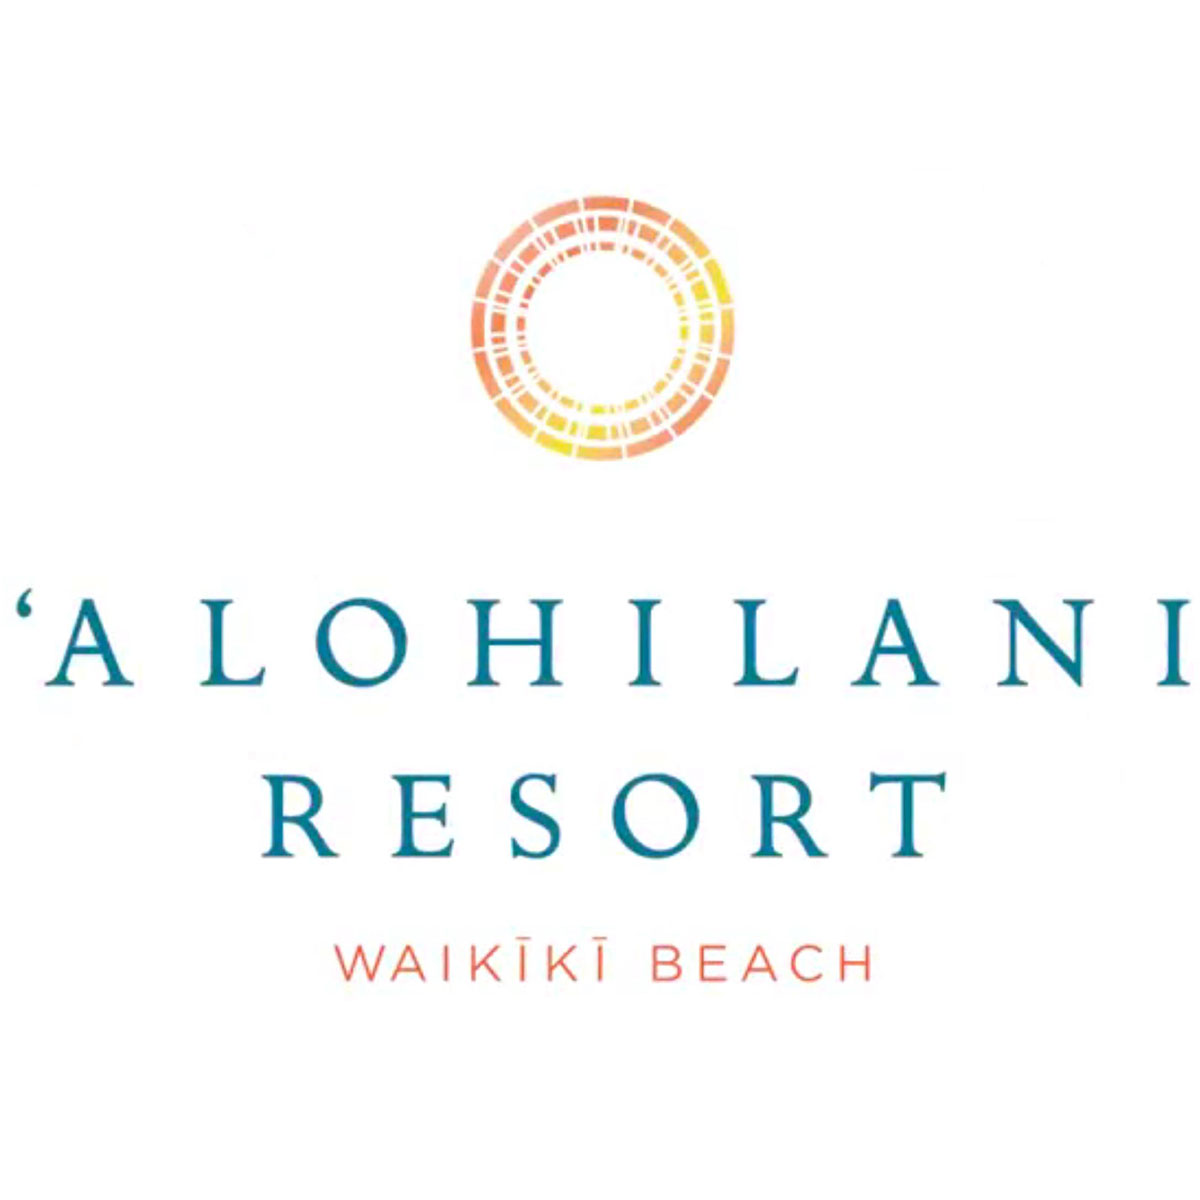 alohilani-resort-at-waikiki-beach-logo.jpg